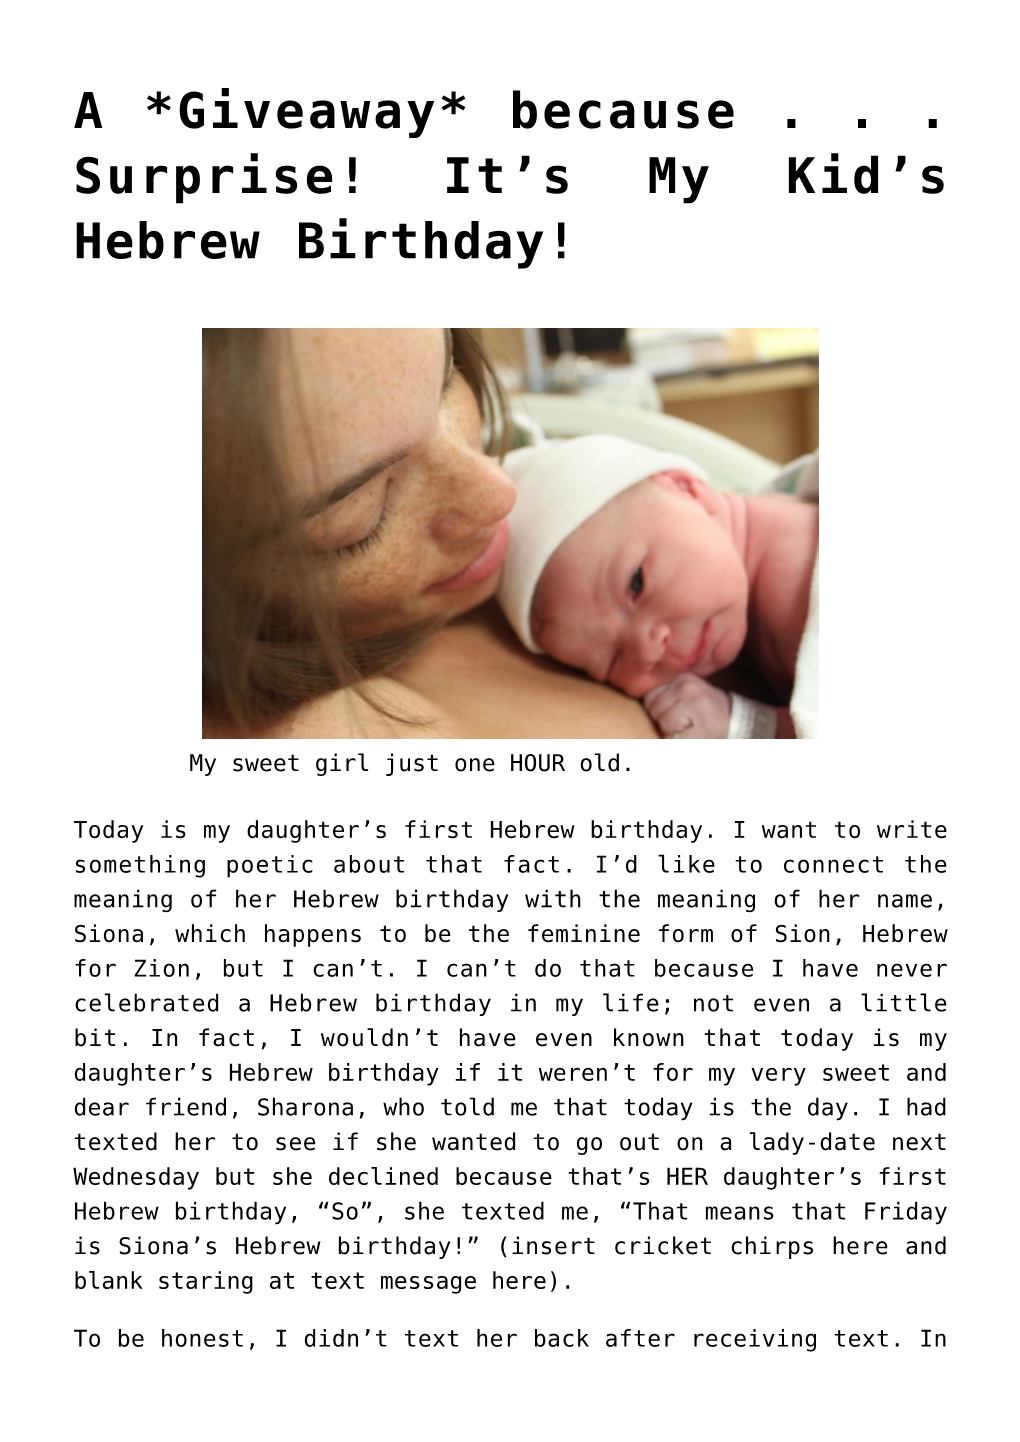 S Hebrew Birthday!